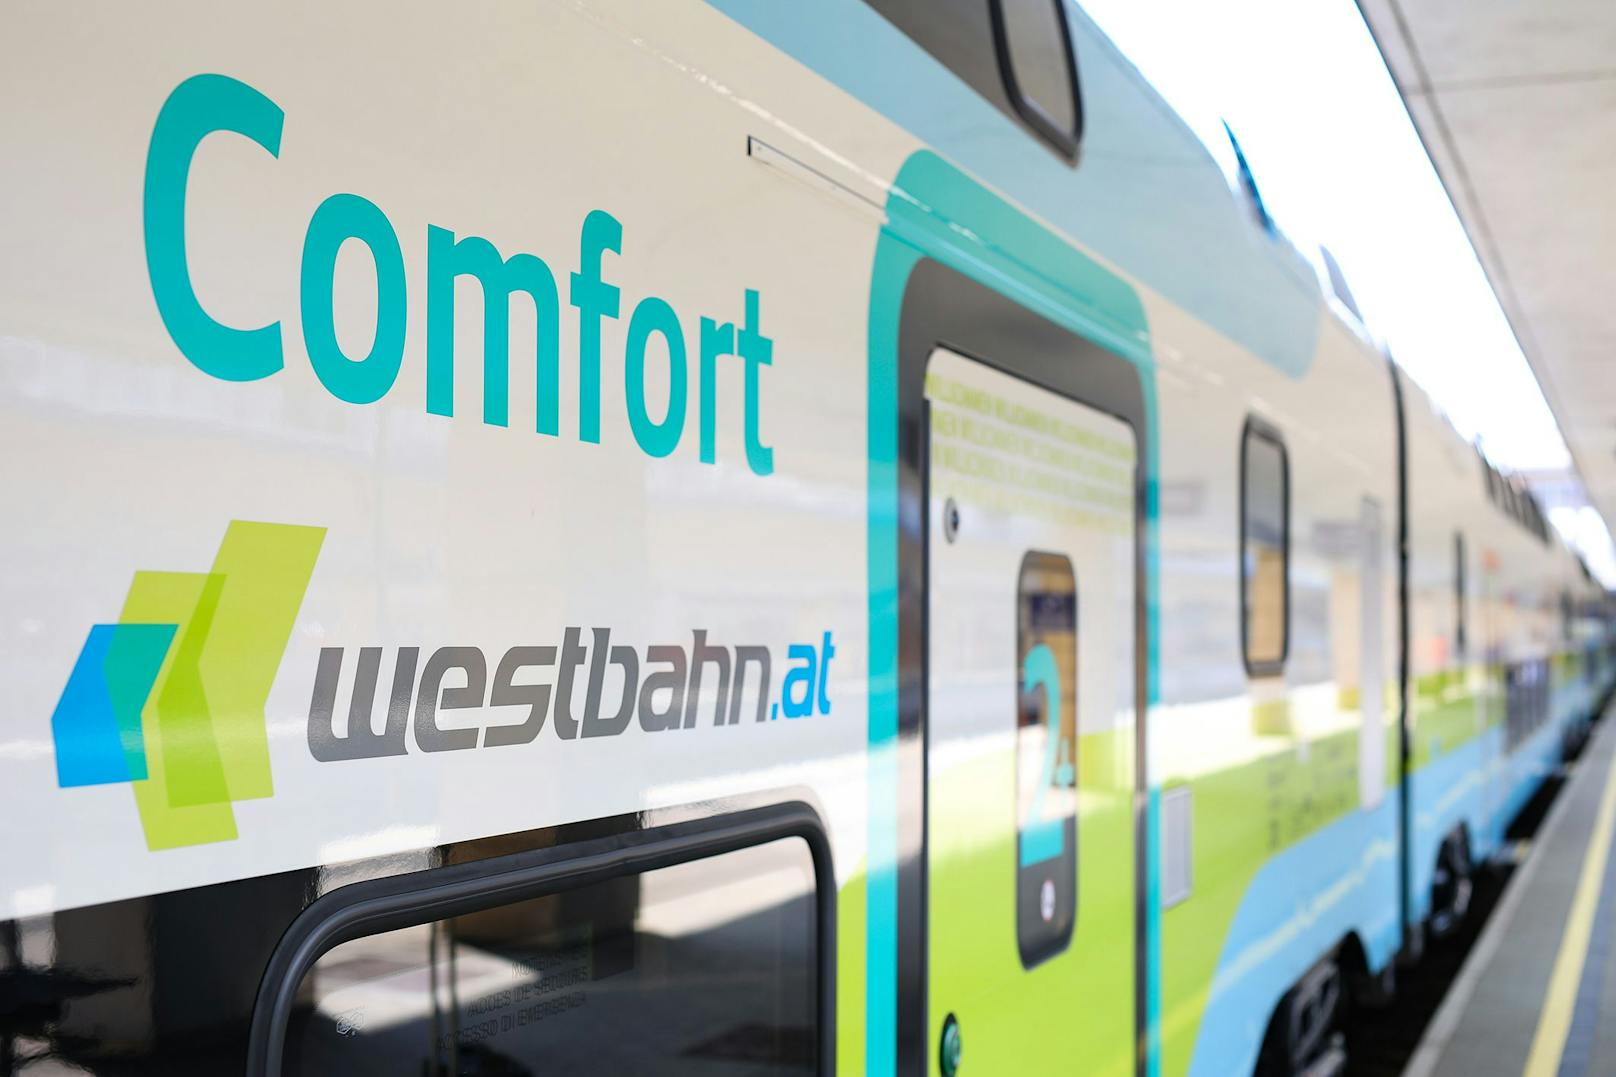 Die neuen Züge verbrauchen aufgrund ihres "Leichtgewichts" für eine Fahrt Wien – Salzburg etwa 25 % weniger Energie als andere Flotten auf dieser Strecke.